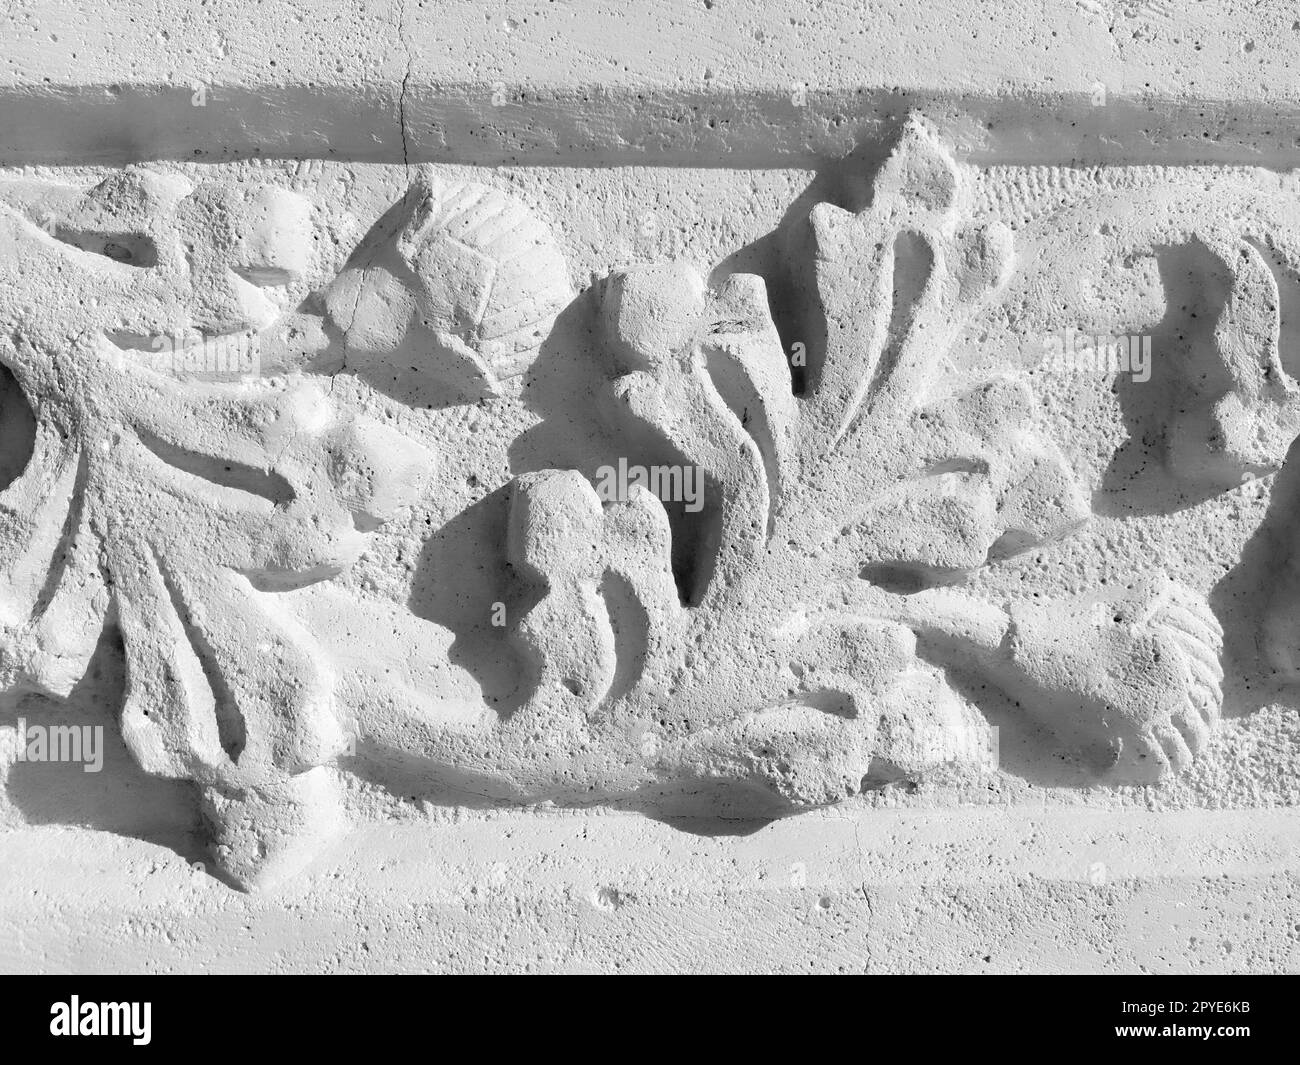 Ornement, dessin sculptural d'éléments végétaux structurés. Décorer le mur avec du stuc à Dubrovnik, Croatie. Une bande de shamrocks. Acanthus est une végétation à base de plantes, les feuilles sont des éléments en stuc. Banque D'Images